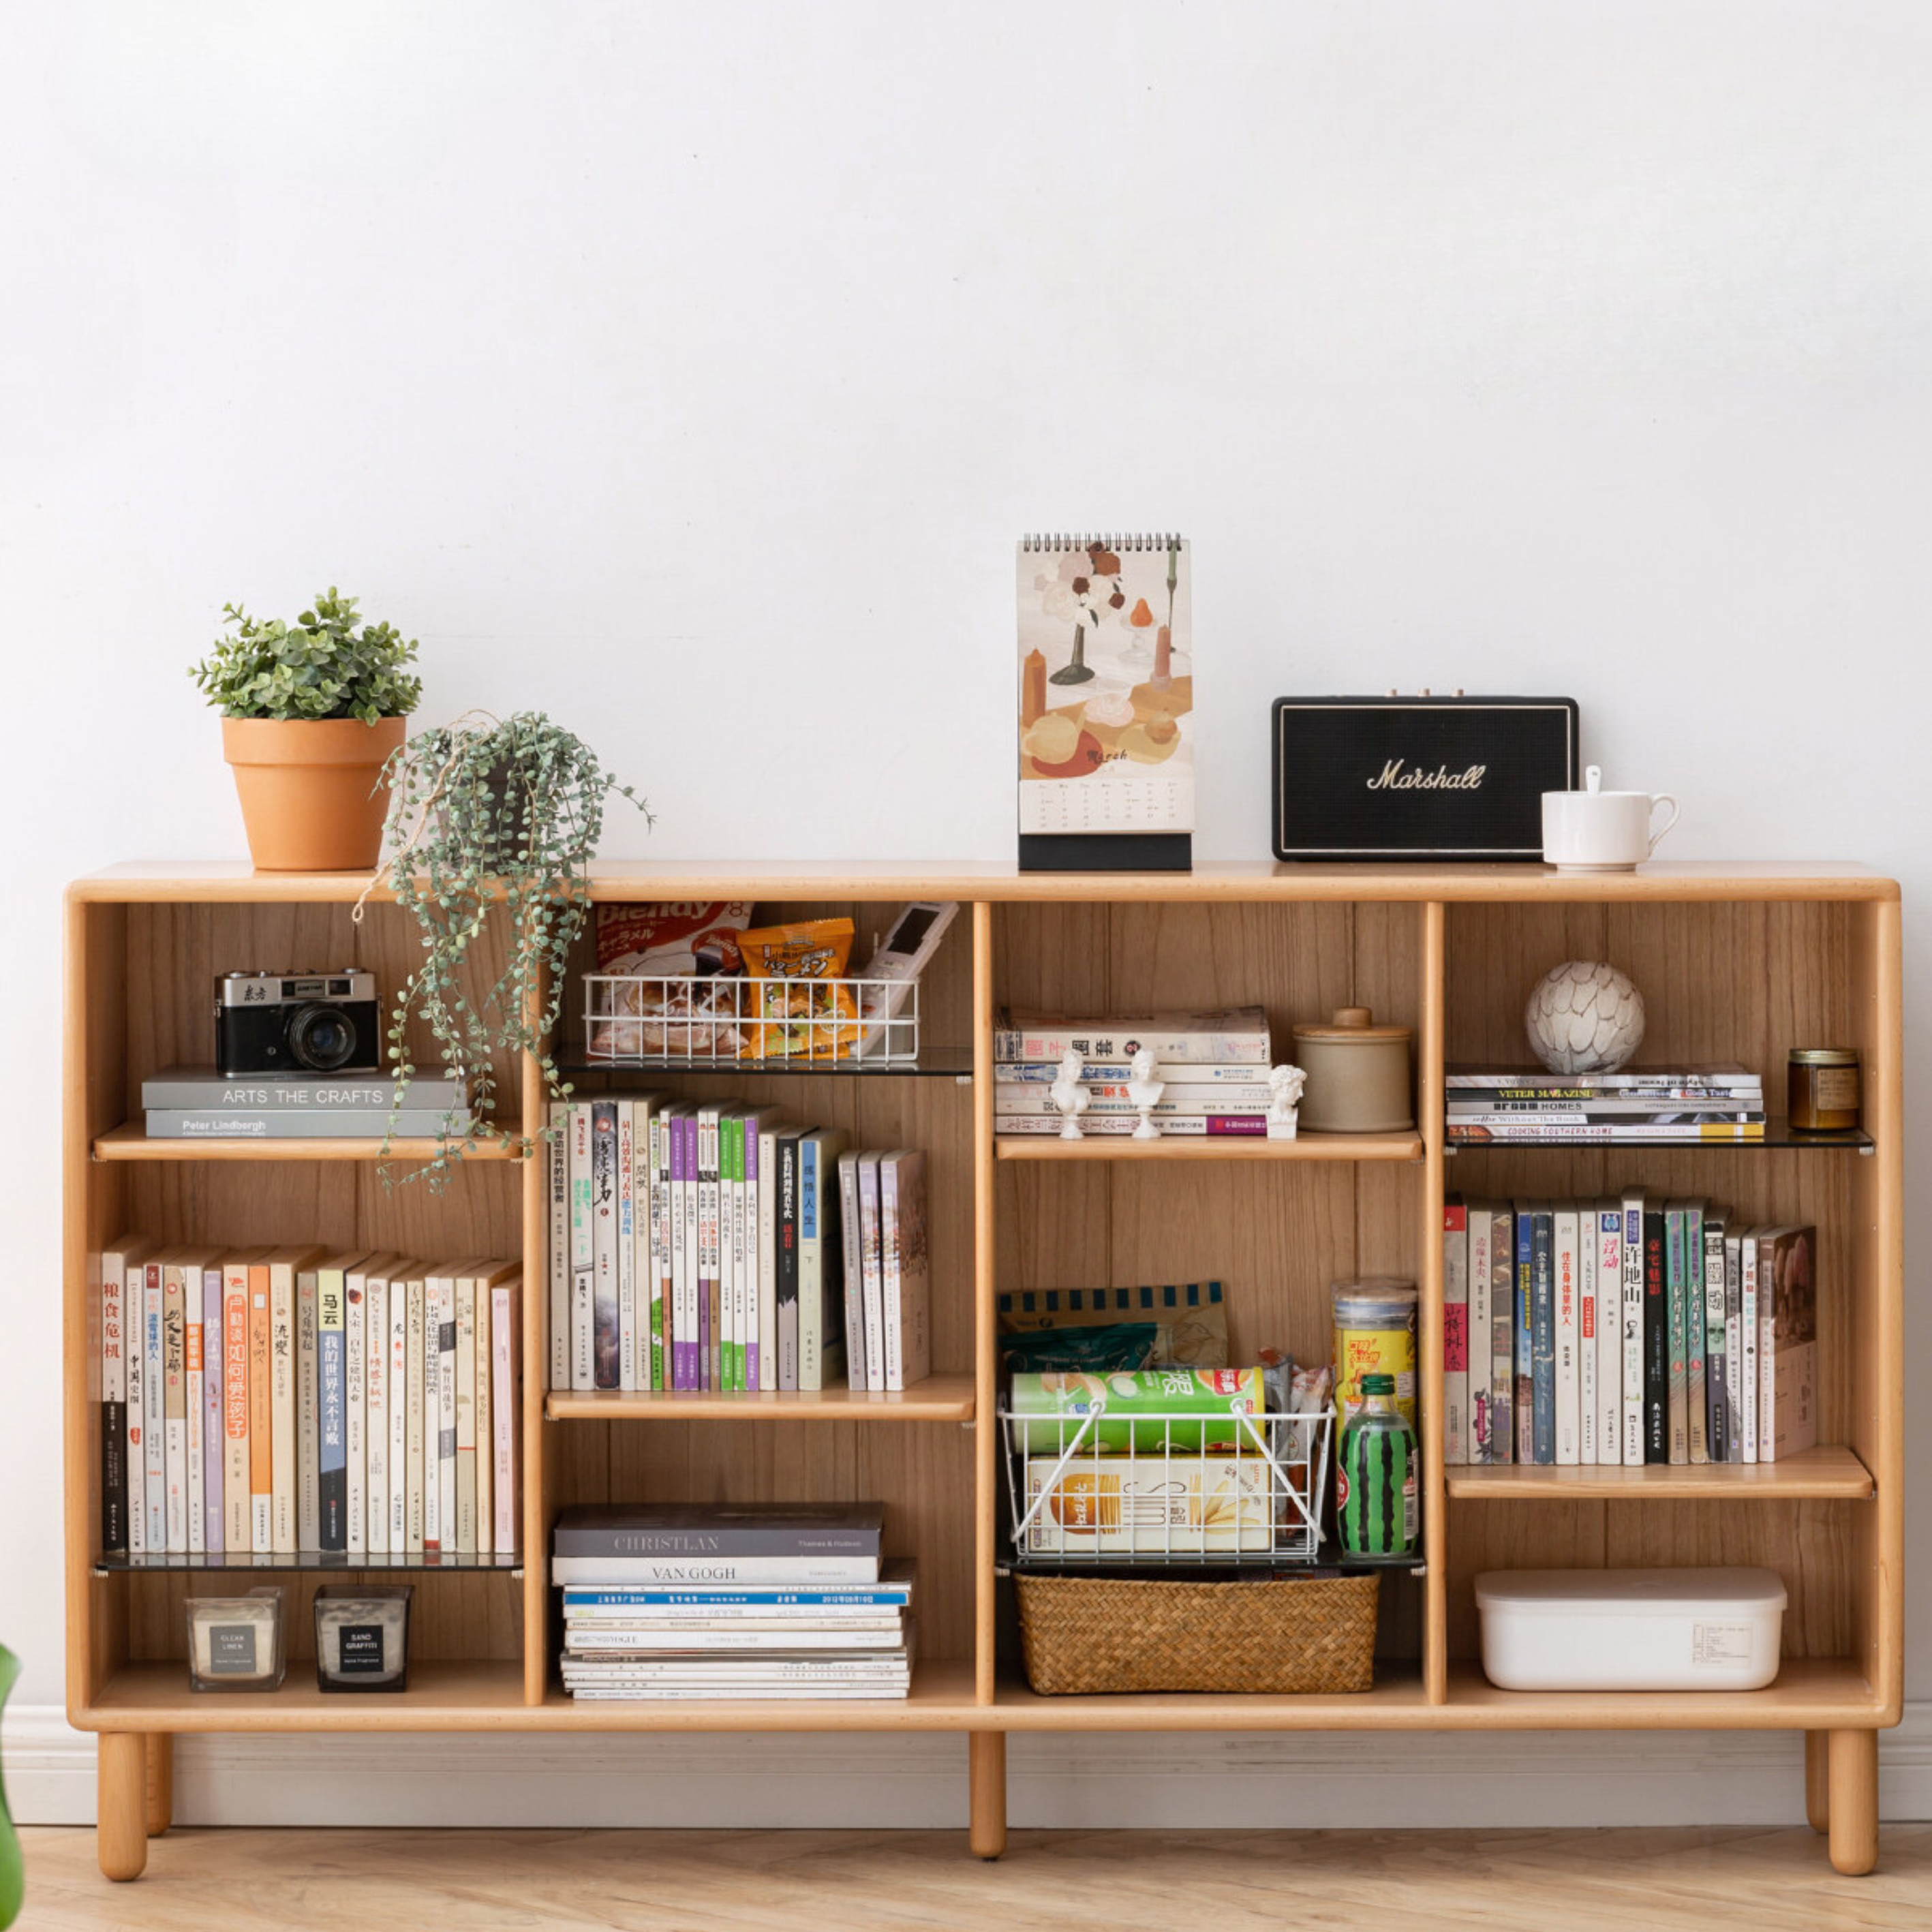 Beech solid wood bookshelf "